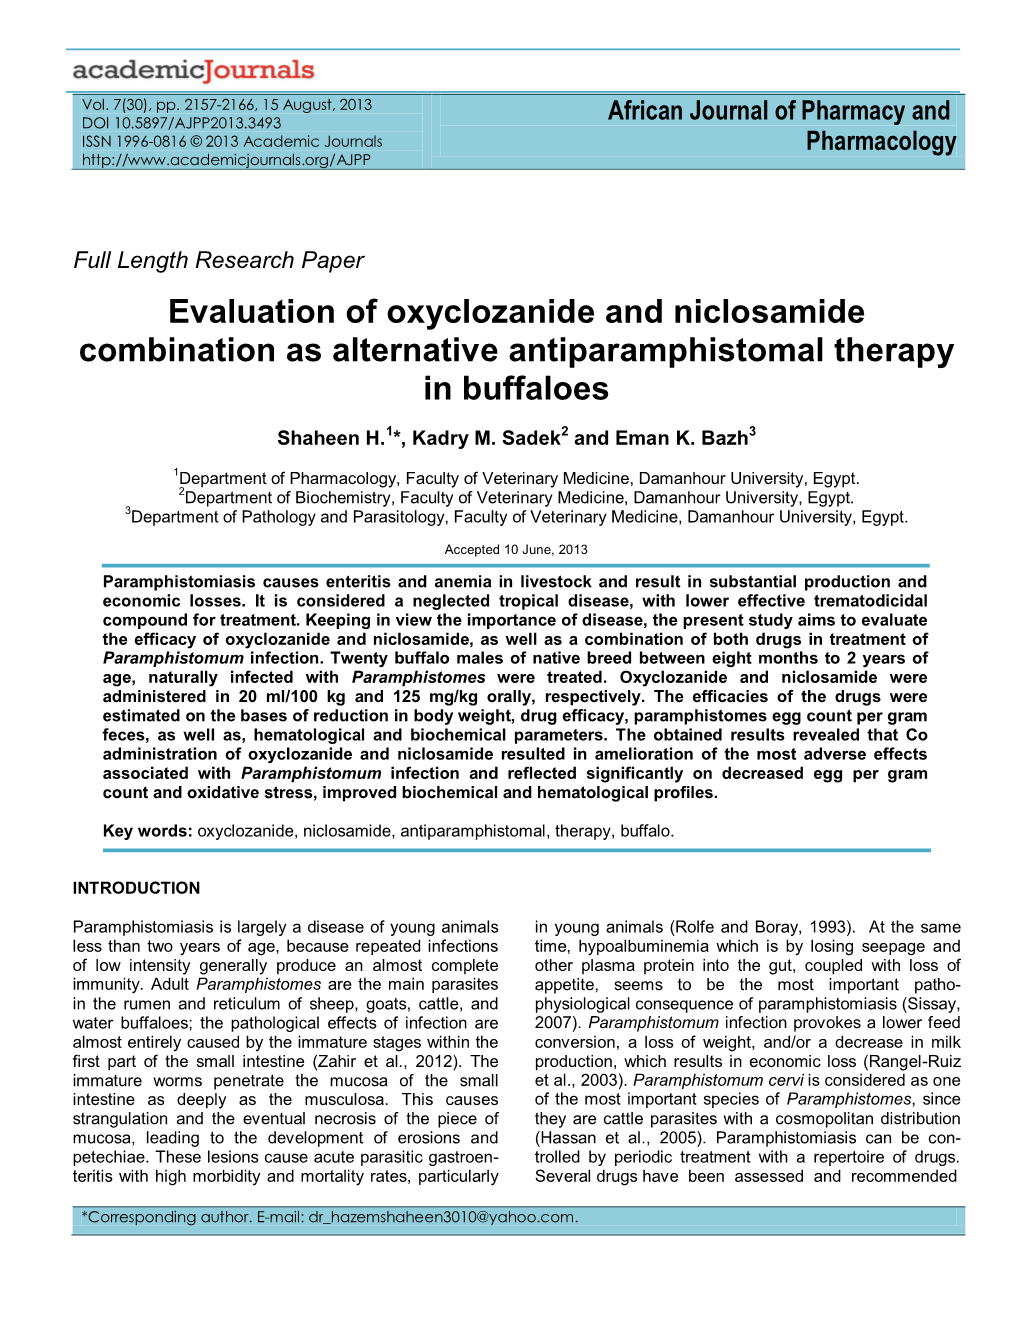 In Vitro and in Vivo Evaluation of Some Antiparamphisomal